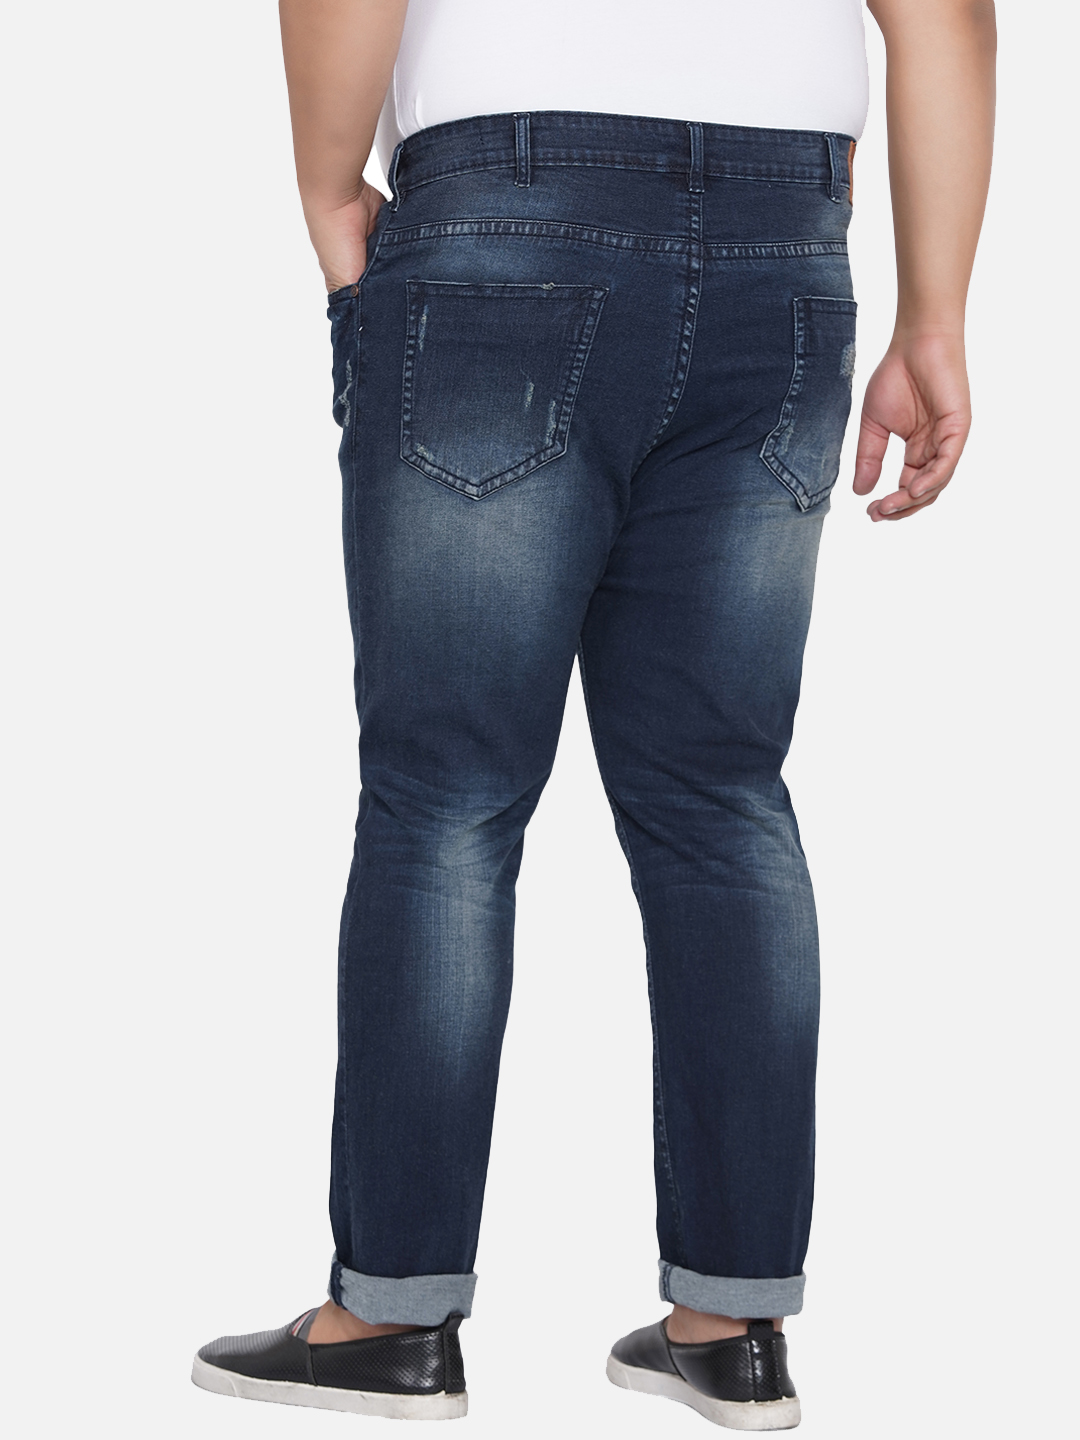 bottomwear/jeans/JPJ12205/jpj12205-5.jpg